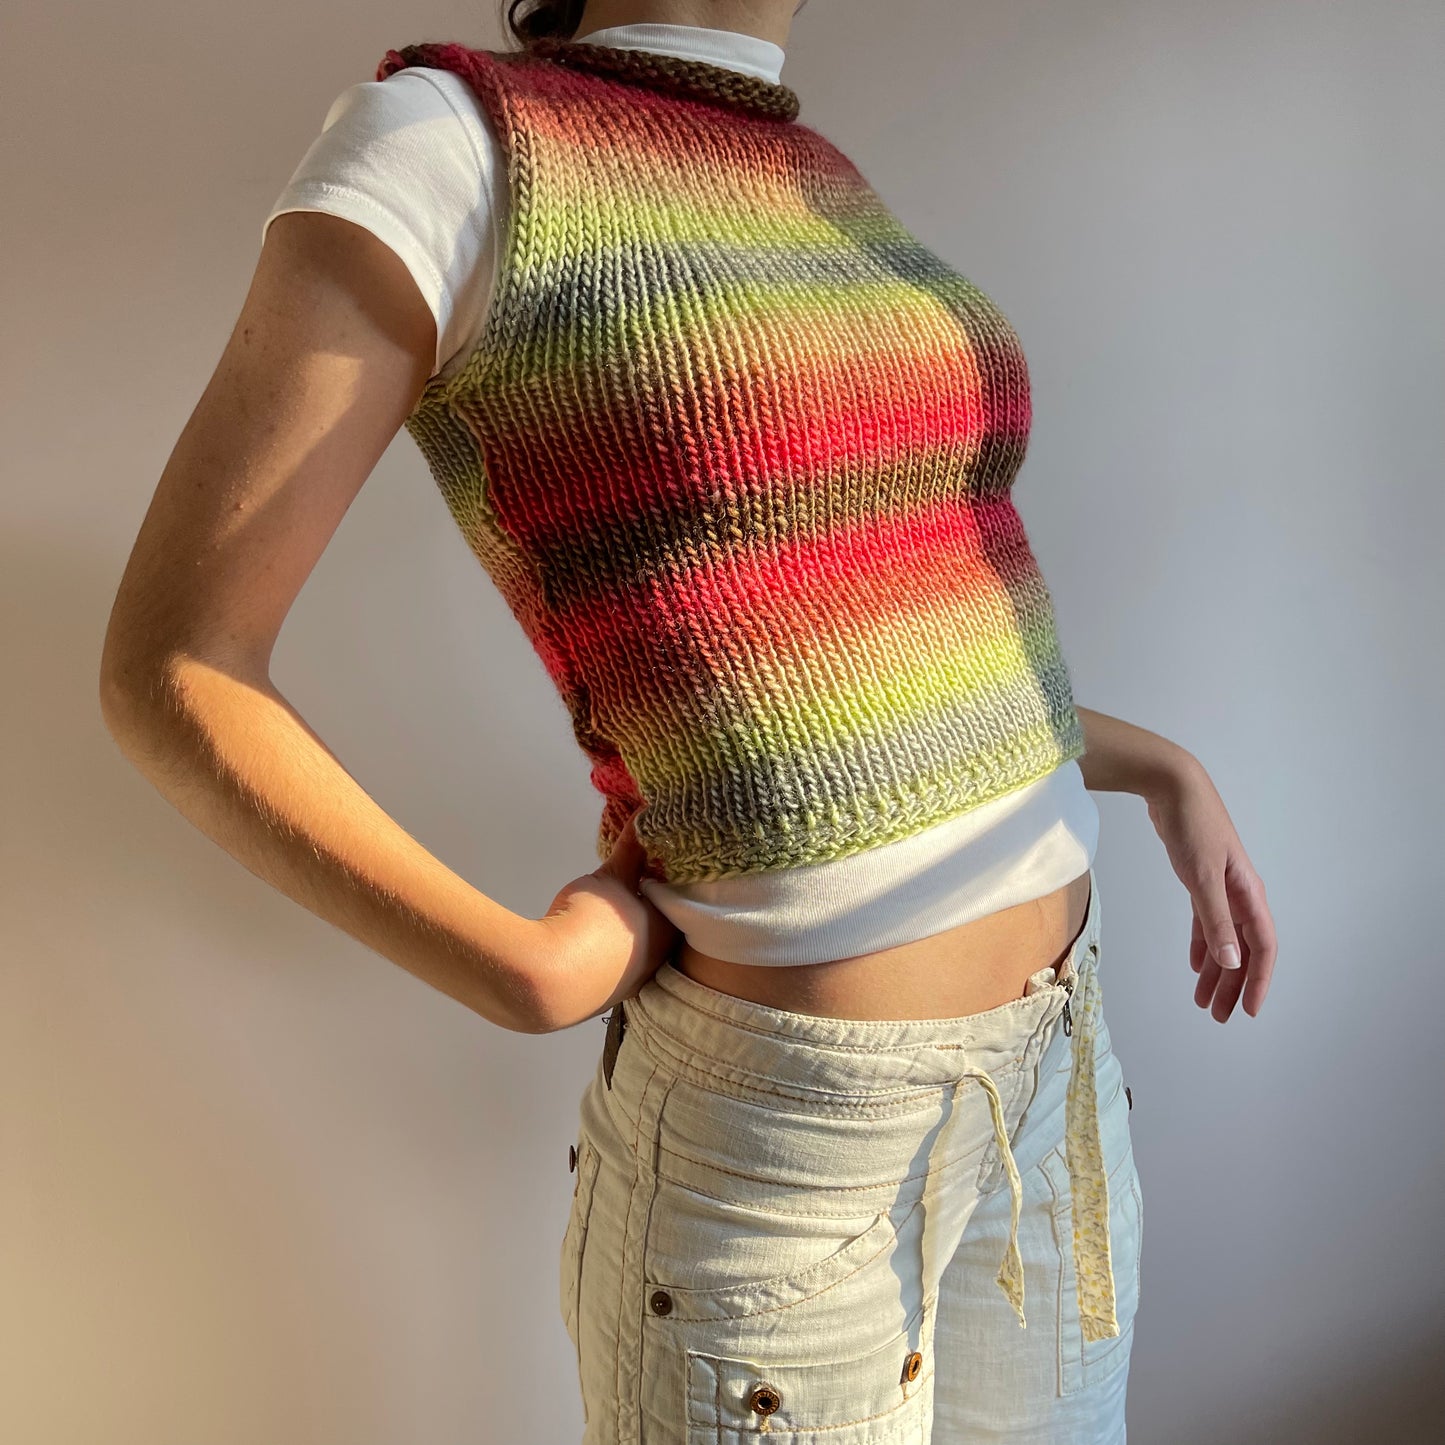 The Fireburst Vest - handmade knitted sweater vest